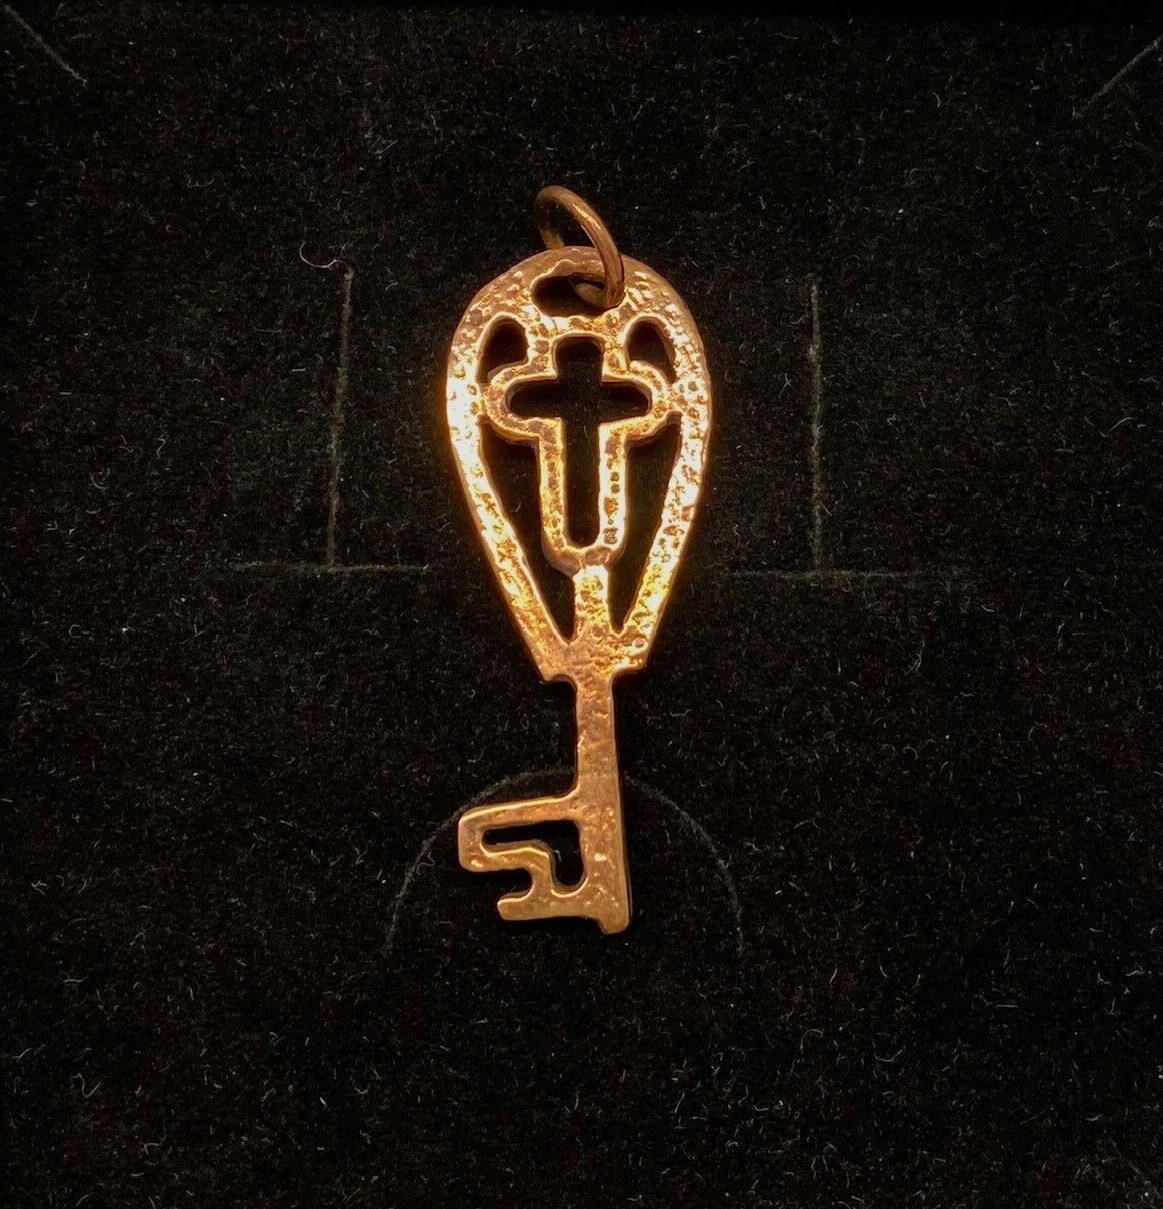 Vikingevedhæng i bronze - Himmelnøgle med kors, kors, Vikingevedhæng i bronze - Himmelnøgle stor vikingesmykke - vikingevedhæng vedhæng bronze vikinge nøglen til himmeriget